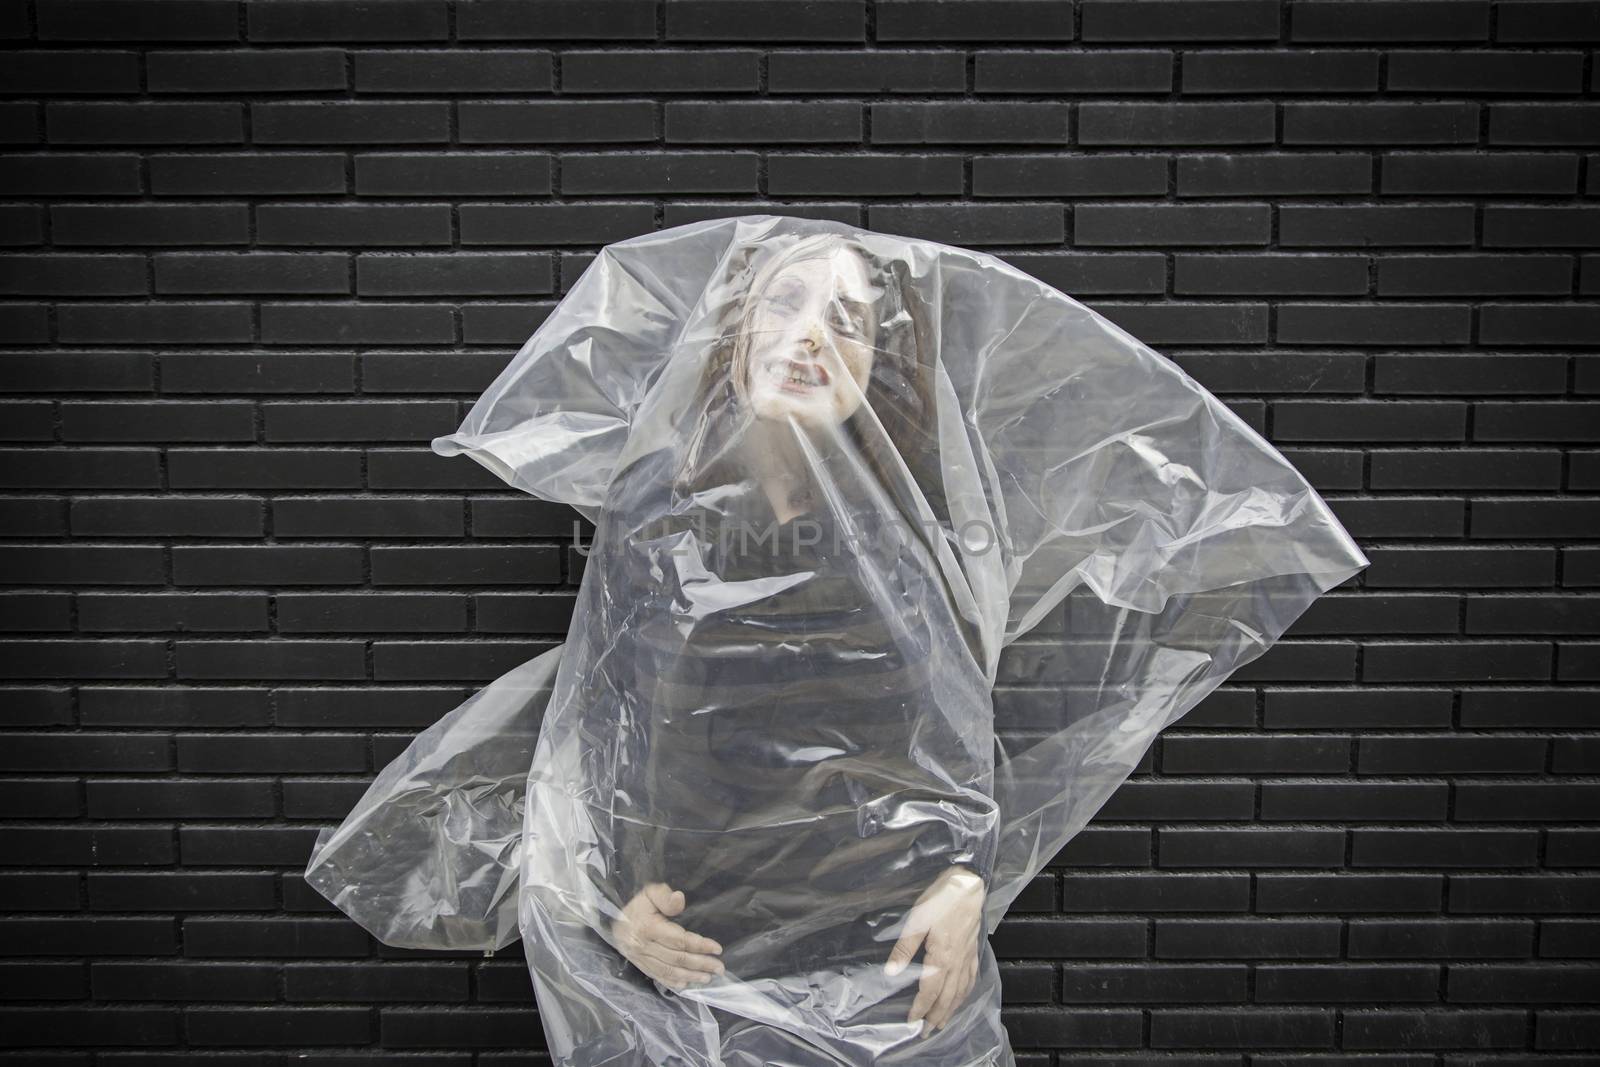 Woman in a body bag by esebene